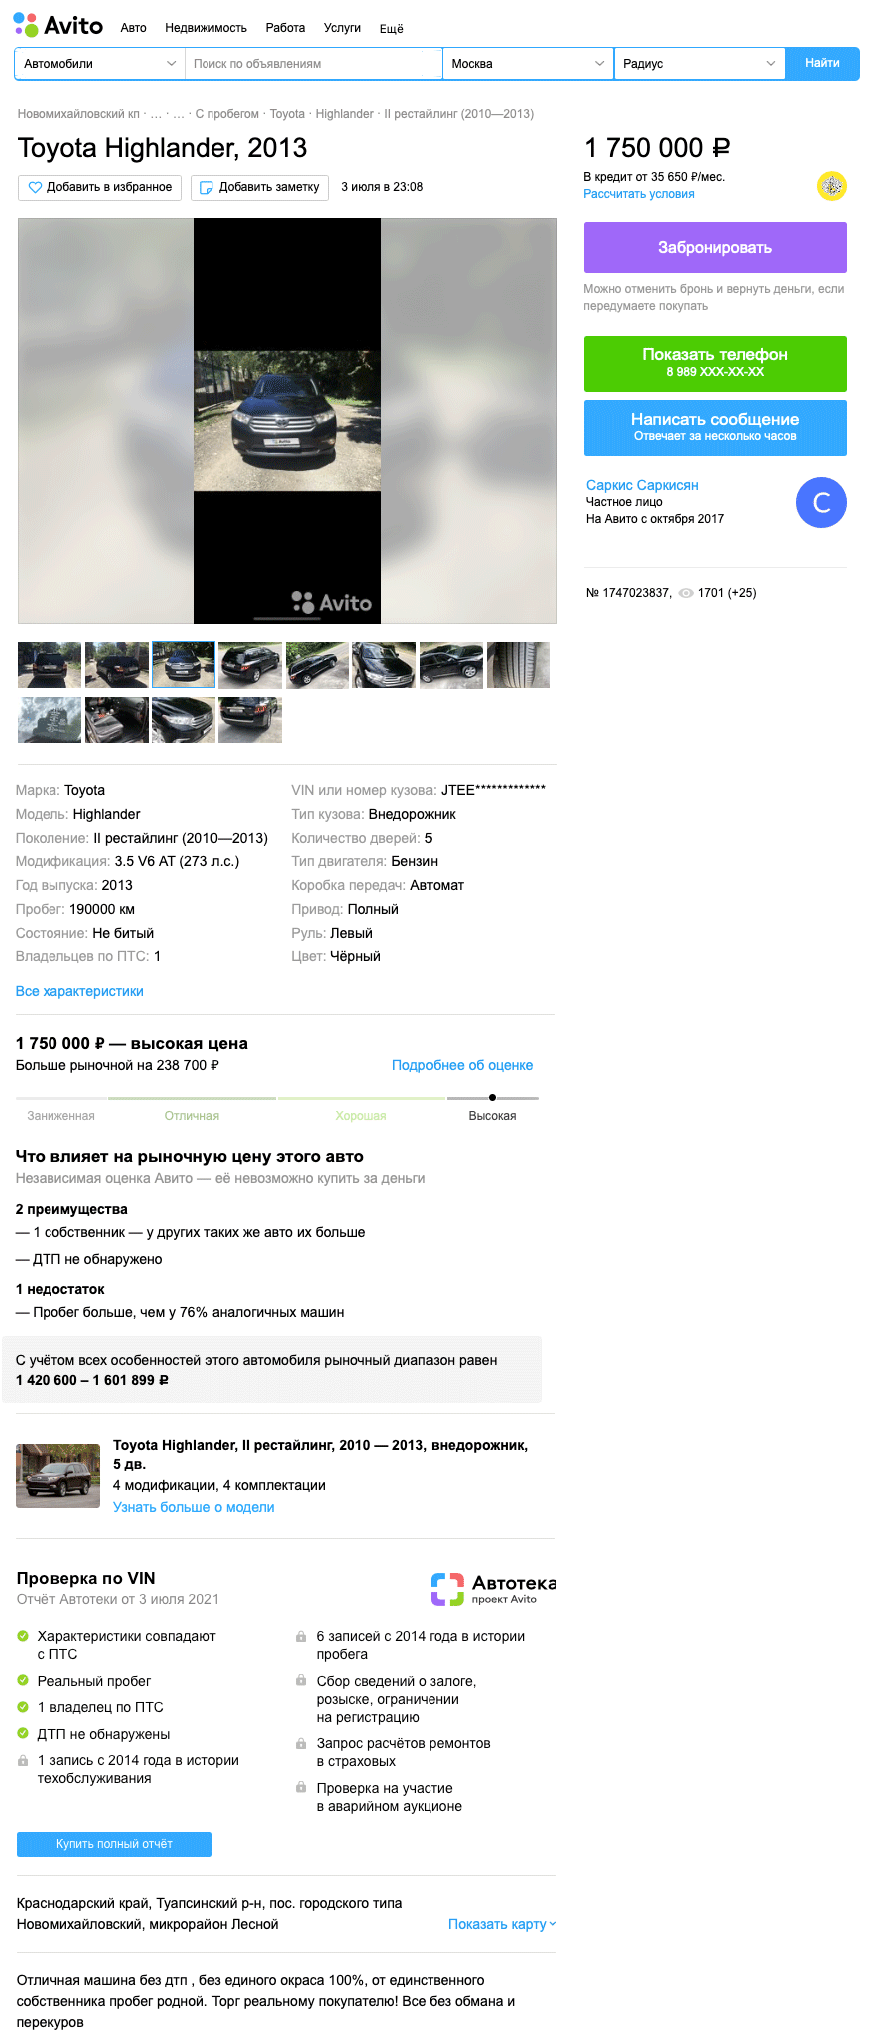 Как Camry 3.5, только побольше: стоит ли покупать Toyota Highlander II за 1,5 миллиона рублей